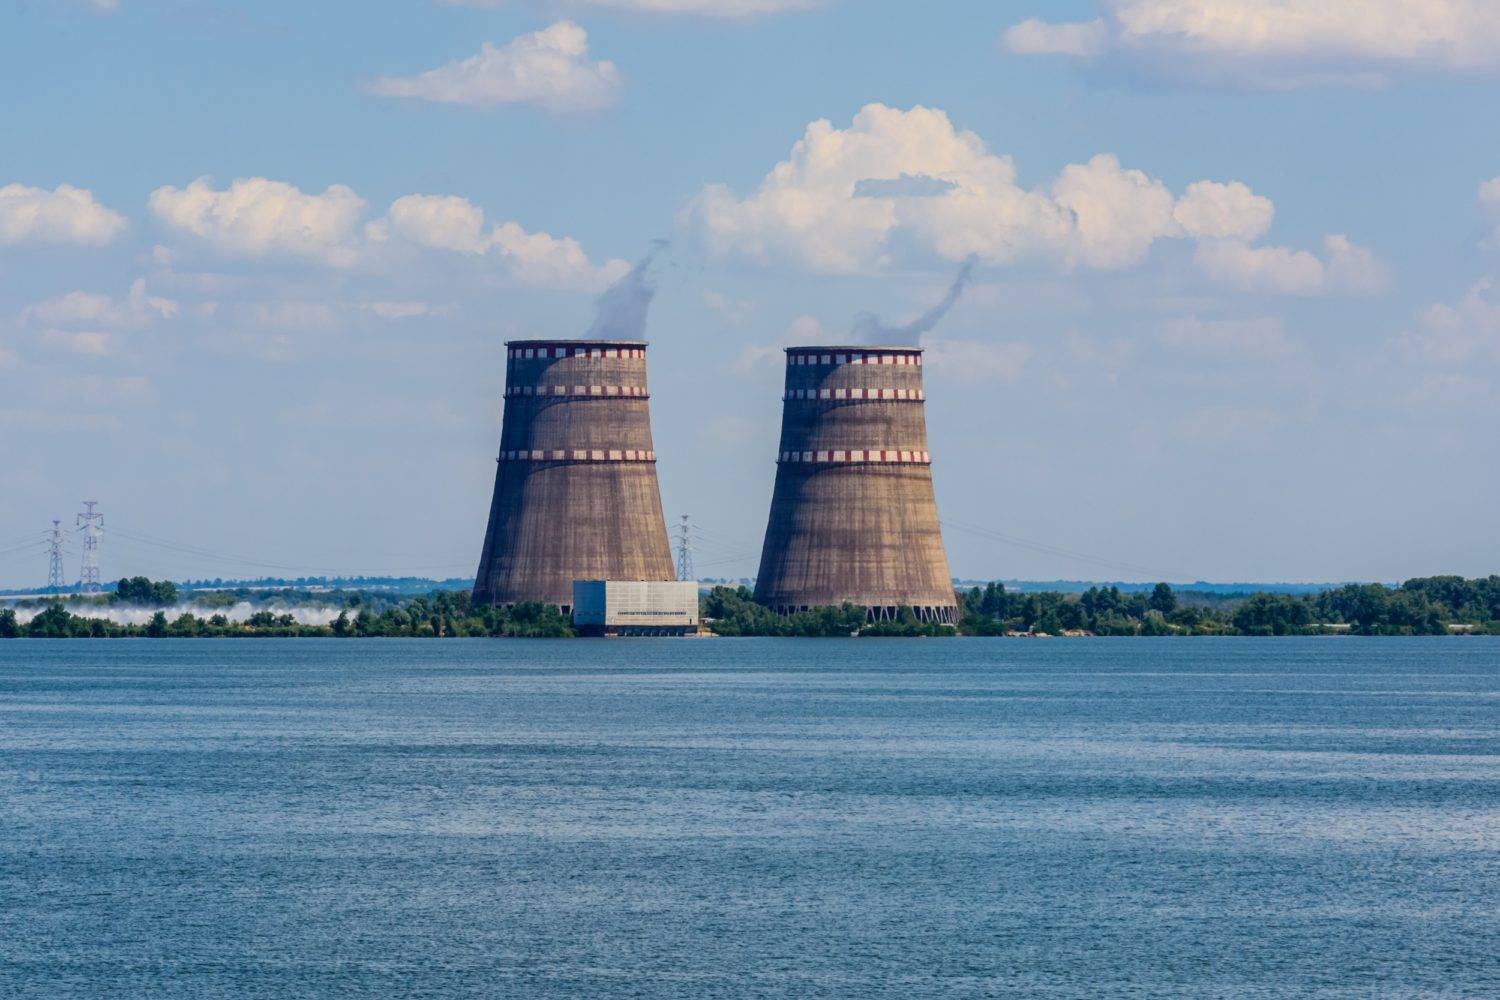 扎波罗热核电站管理方：核电站外部供电已中断